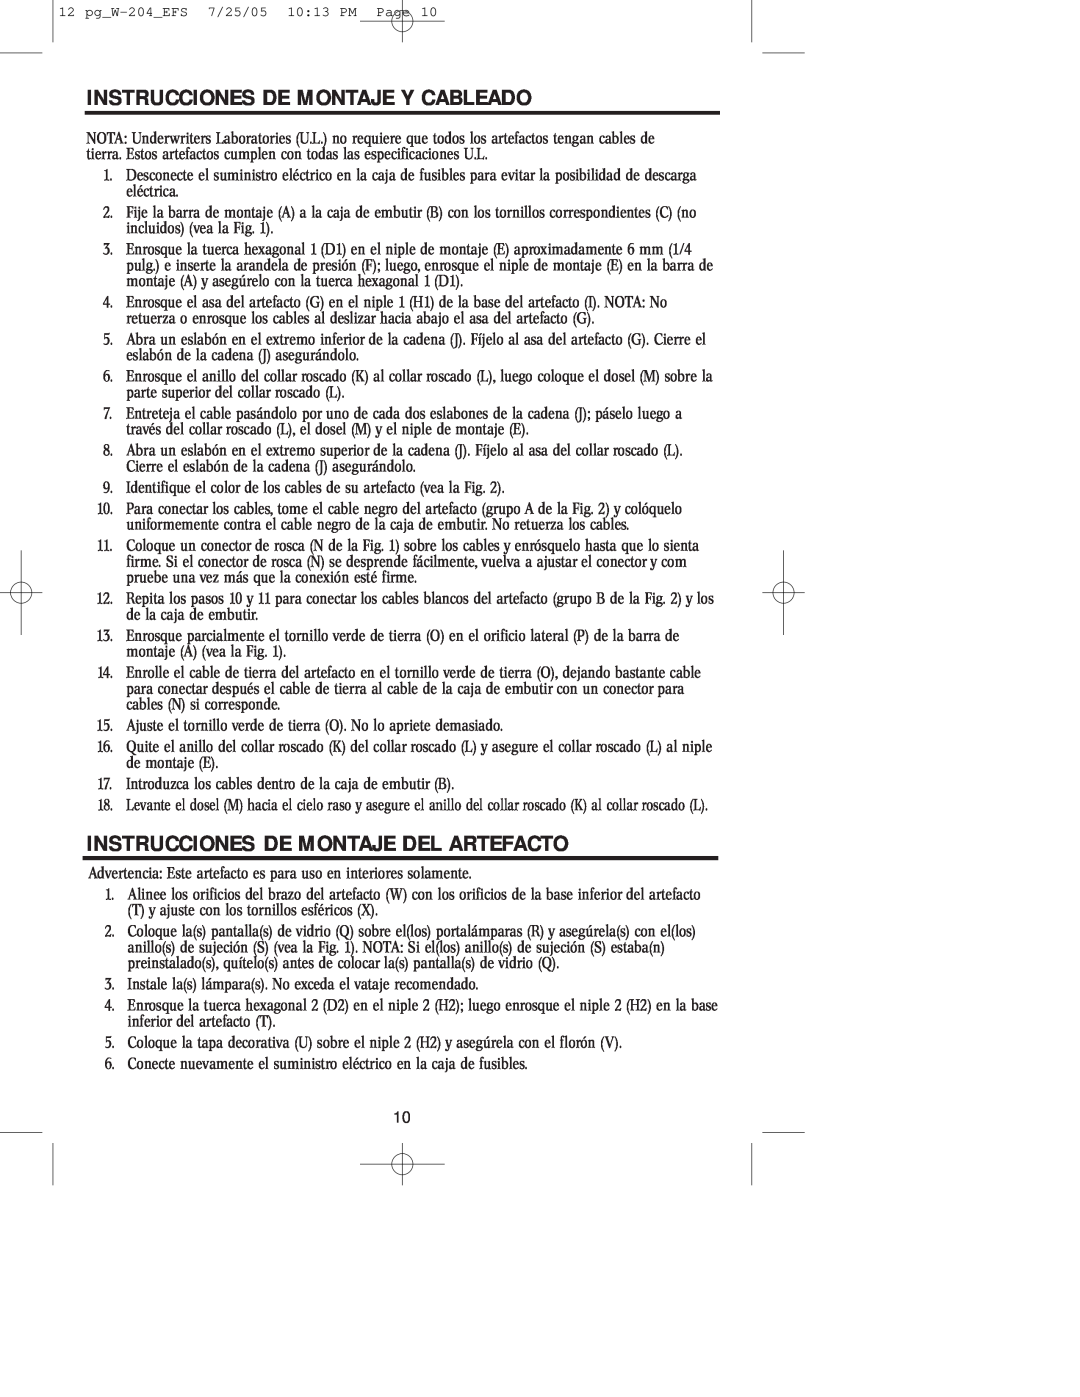 Westinghouse W-204 owner manual Instrucciones De Montaje Y Cableado, Instrucciones De Montaje Del Artefacto 